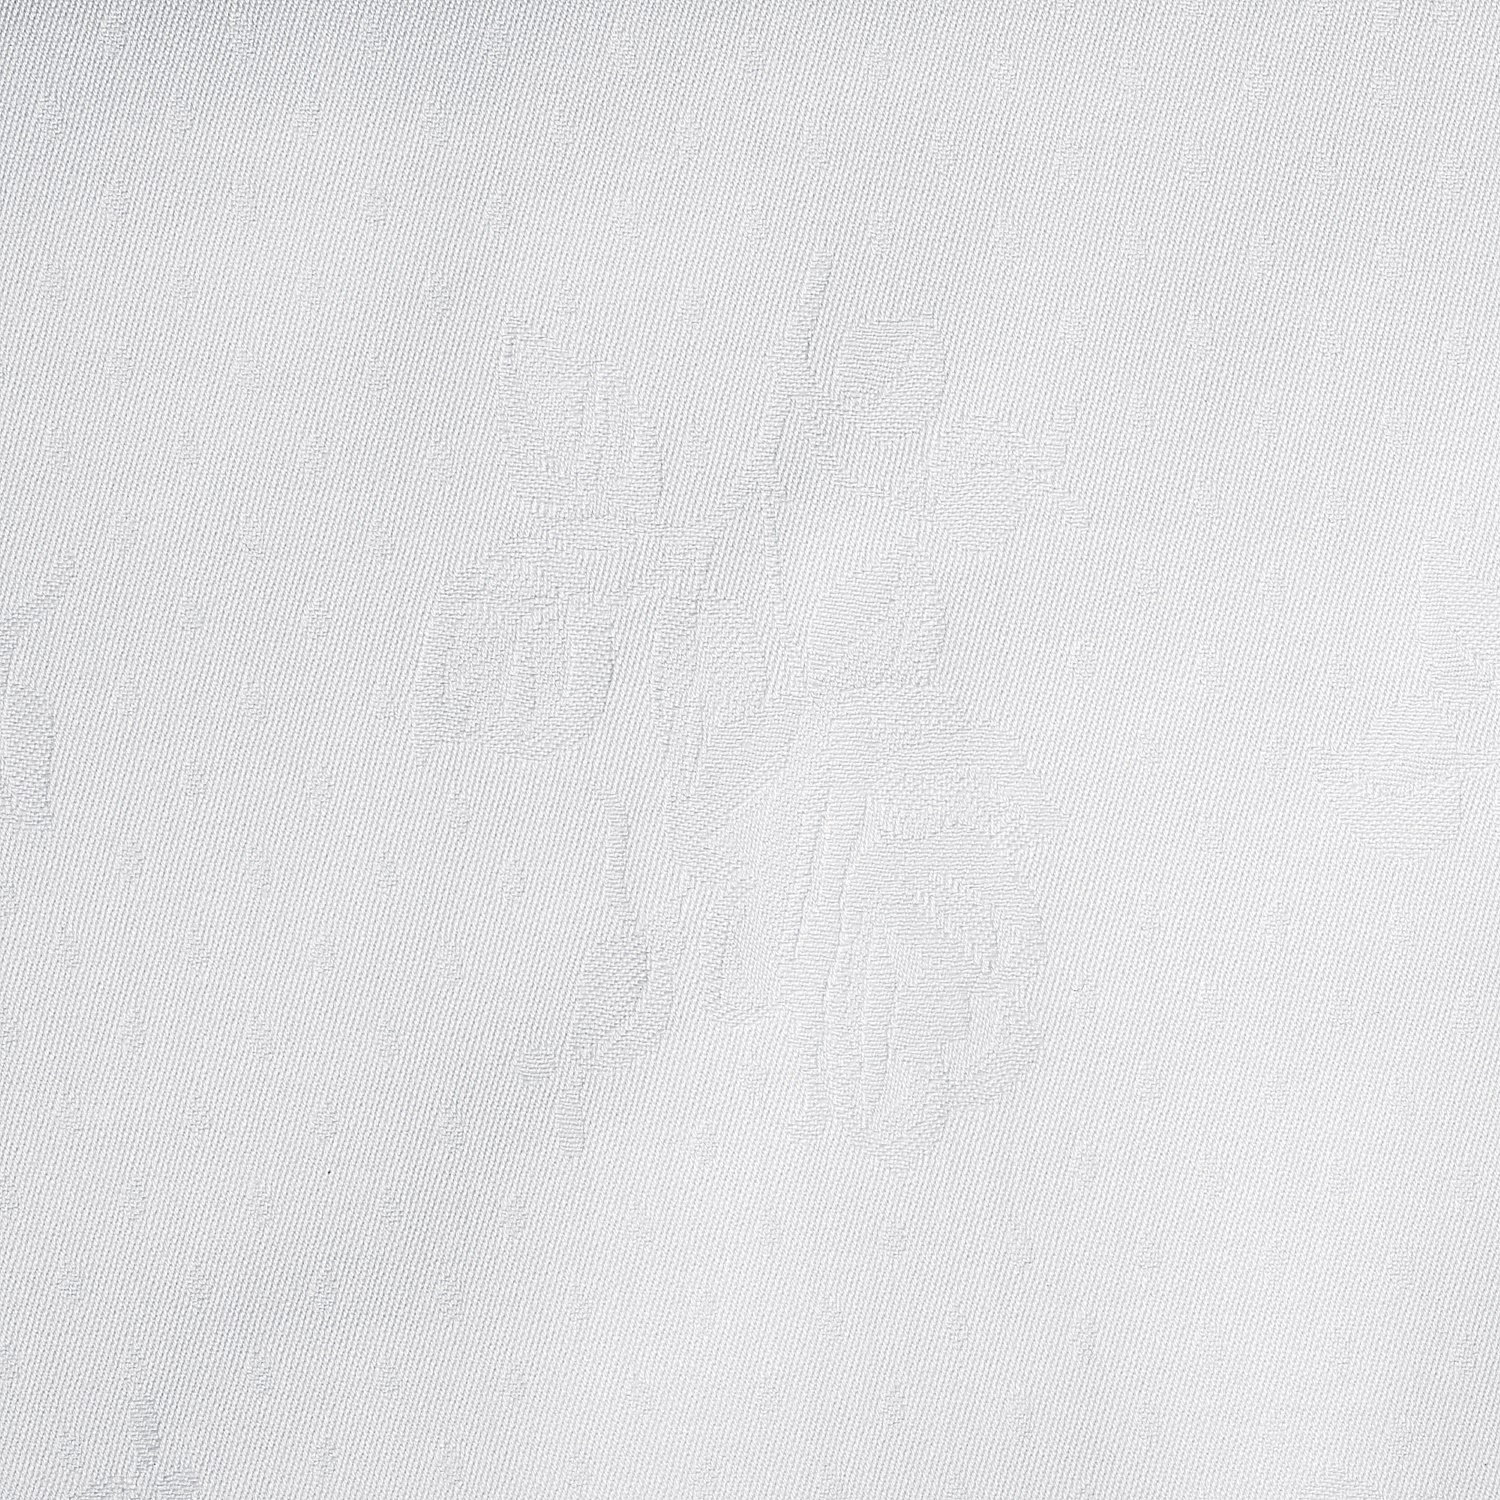 Damasttischdecke Rosenmuster weiß 130x170cm 